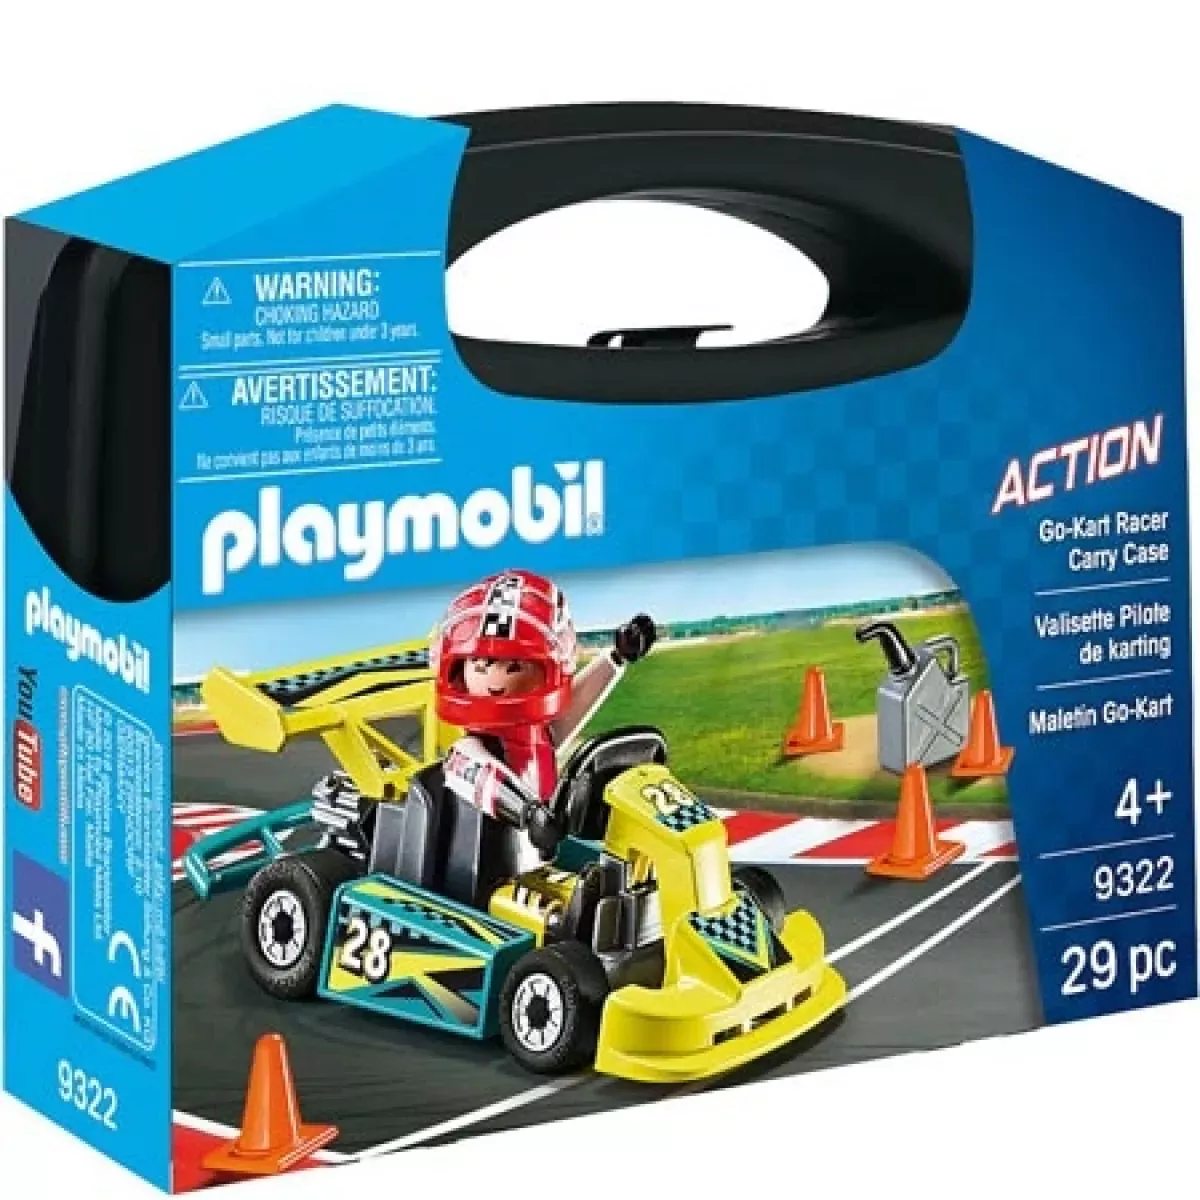 #3 - Playmobil Action Go-Kart Racer Kuffert - 9322